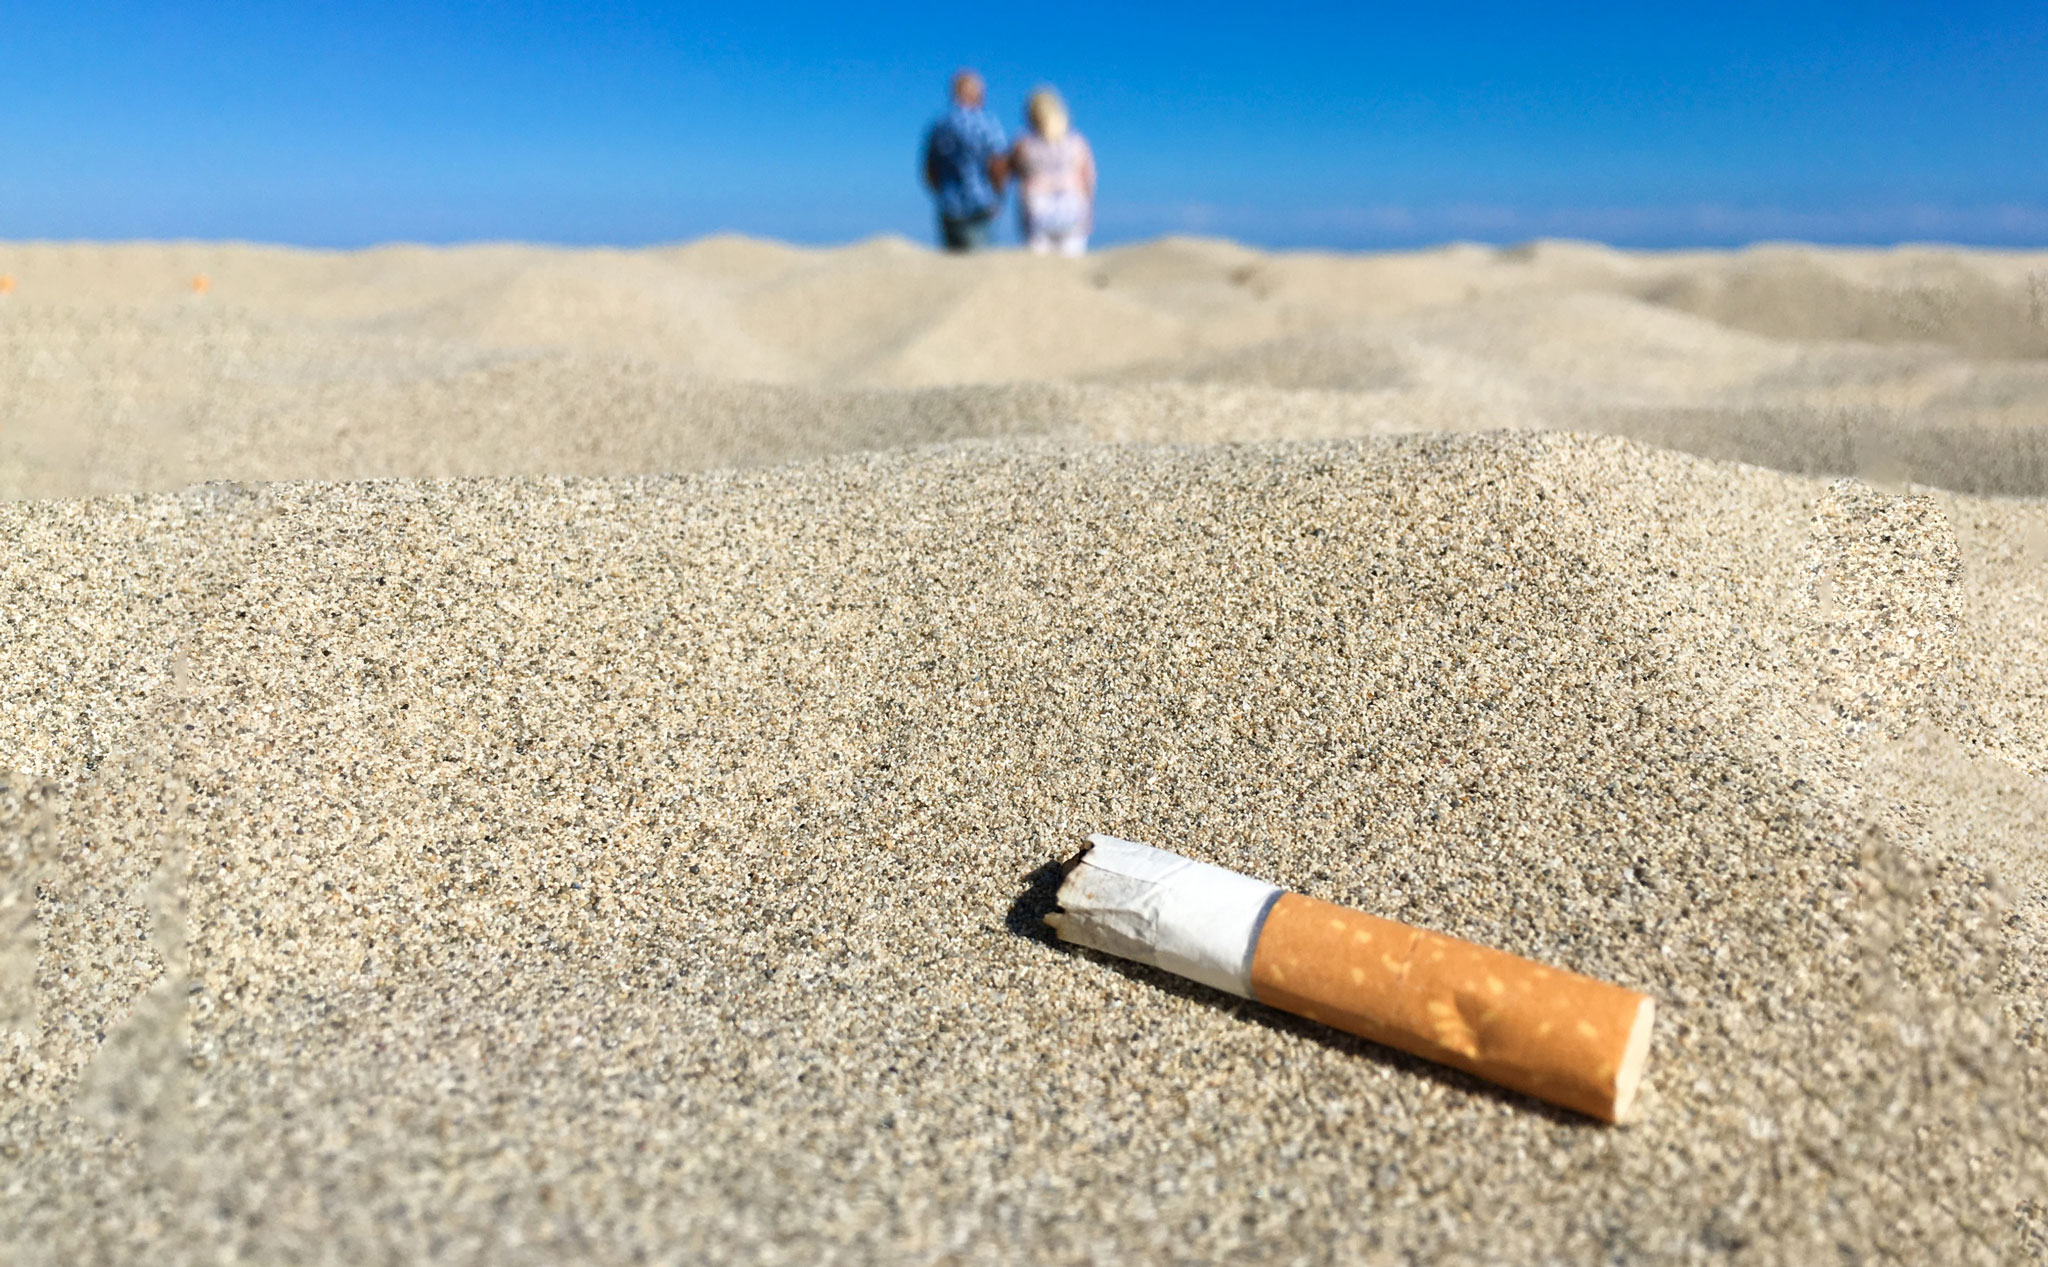 Đầu mẩu thuốc lá mới là thứ gây hại môi trường nhất chứ không phải chất thải từ nhựa